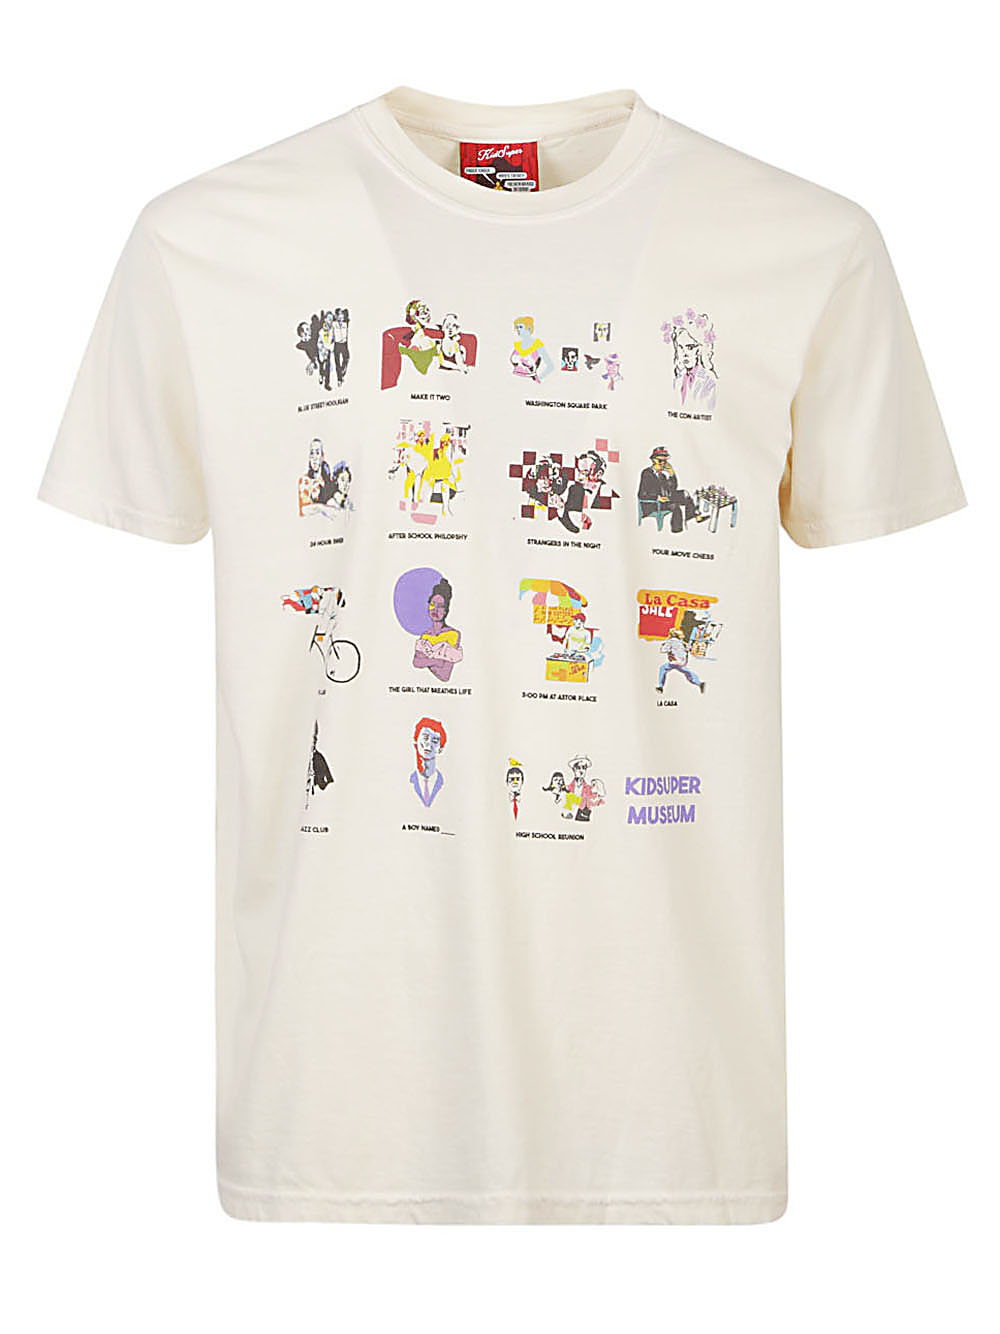 KIDSUPER KIDSUPER- Printed Cotton T-shirt